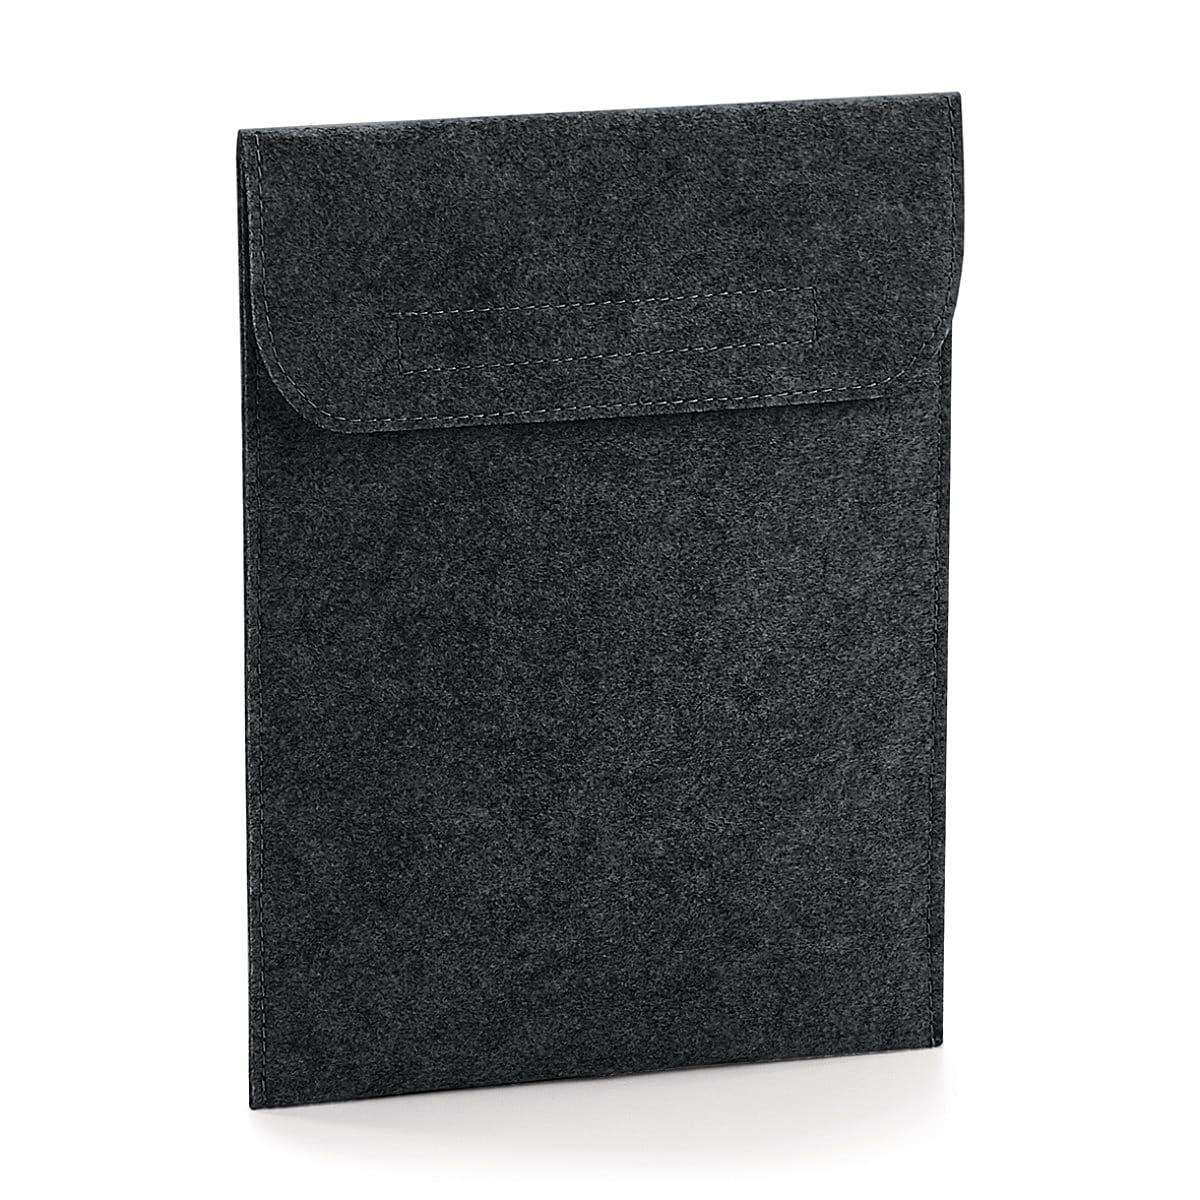 Bagbase Felt iPad Slip in Charcoal Melange (Product Code: BG727)